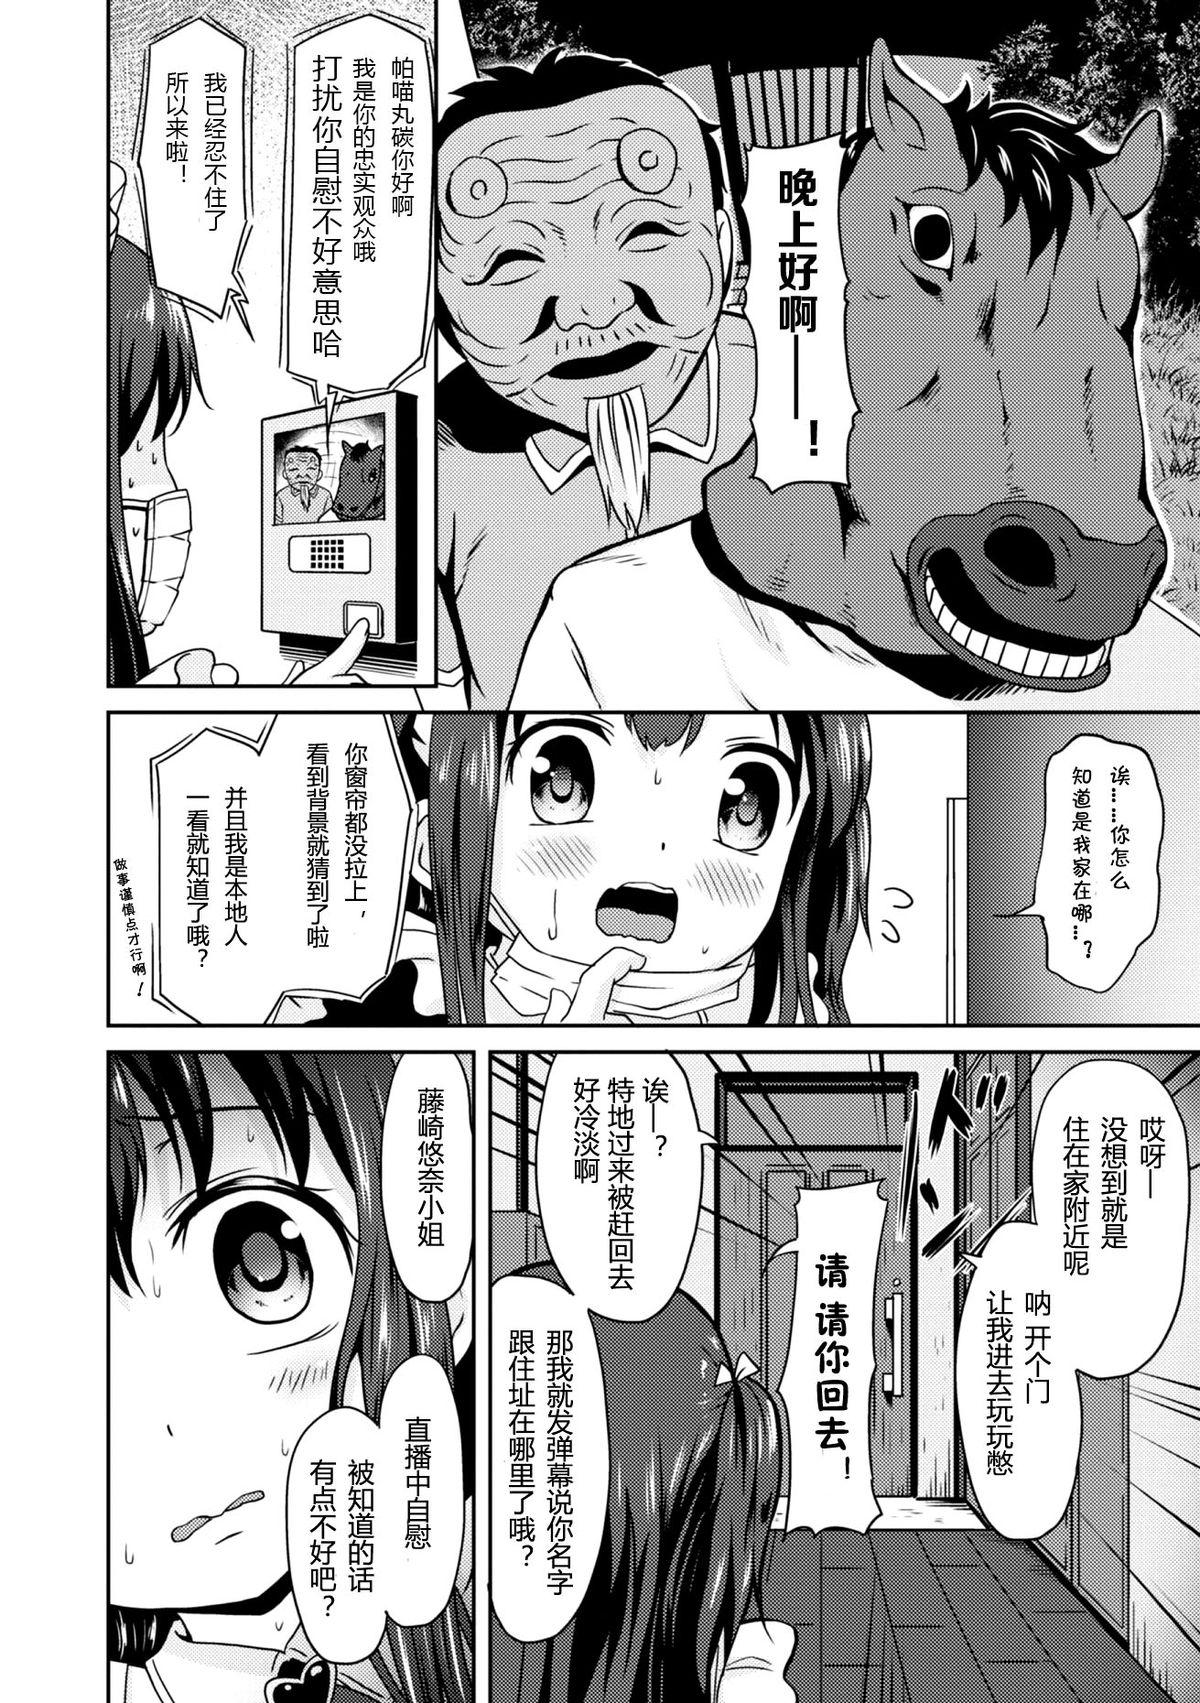 Putita "Jigoku no" Panyumaru Seihaishin - Maboroshi no Guest Kai "ReaTotsu" Deep - Page 6